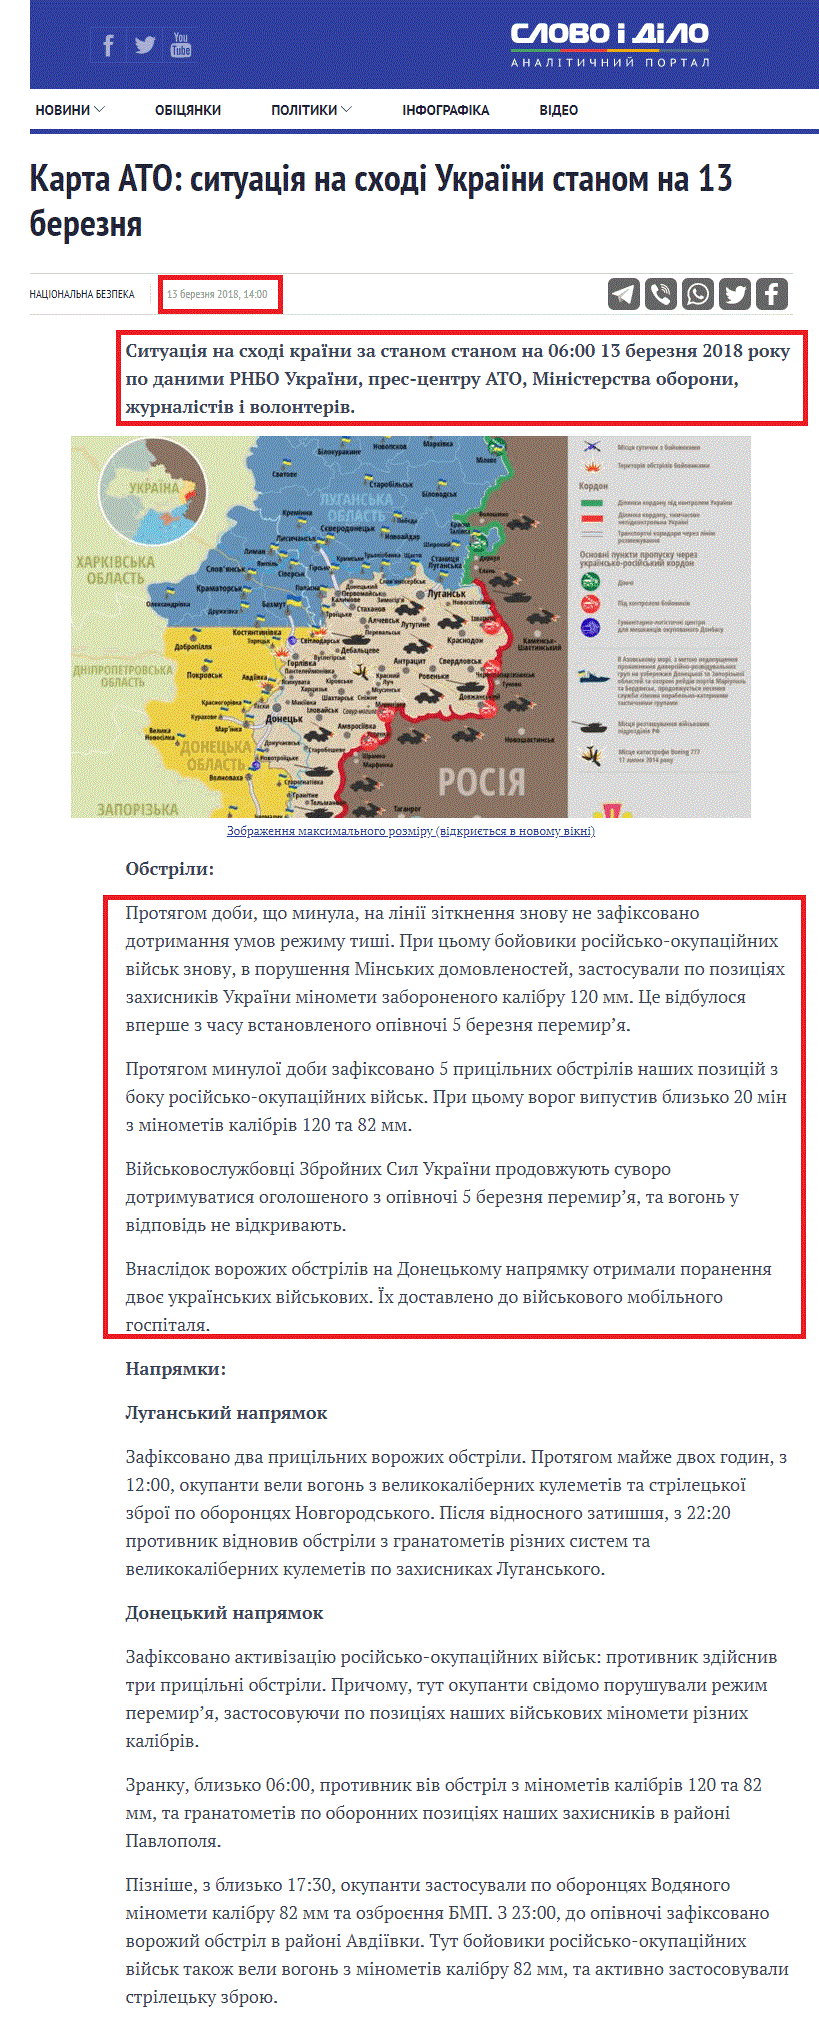 https://www.slovoidilo.ua/2018/03/13/karta/karta-ato-sytuacziya-sxodi-ukrayiny-stanom-13-bereznya